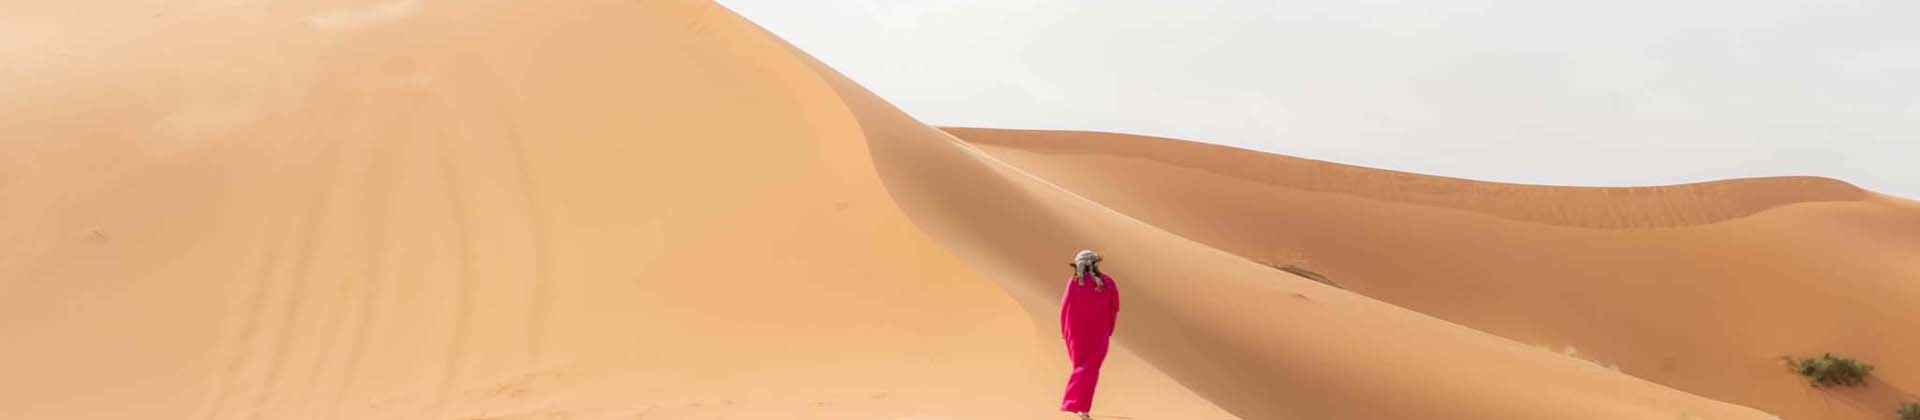 カテゴリー: モロッコ旅行事情